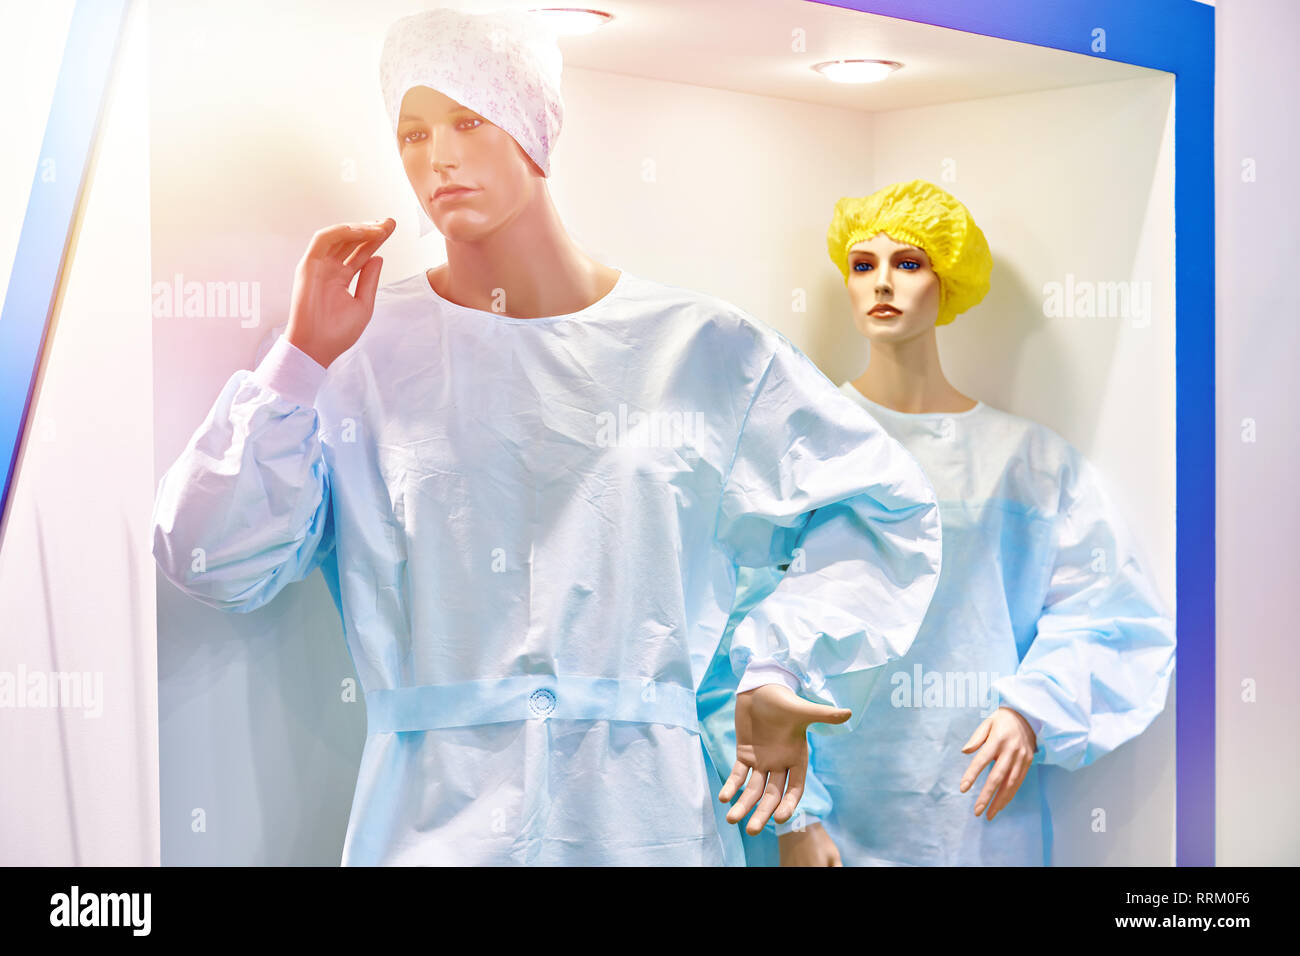 Les Mannequins homme et femme en blouse de chirurgien en magasin Banque D'Images